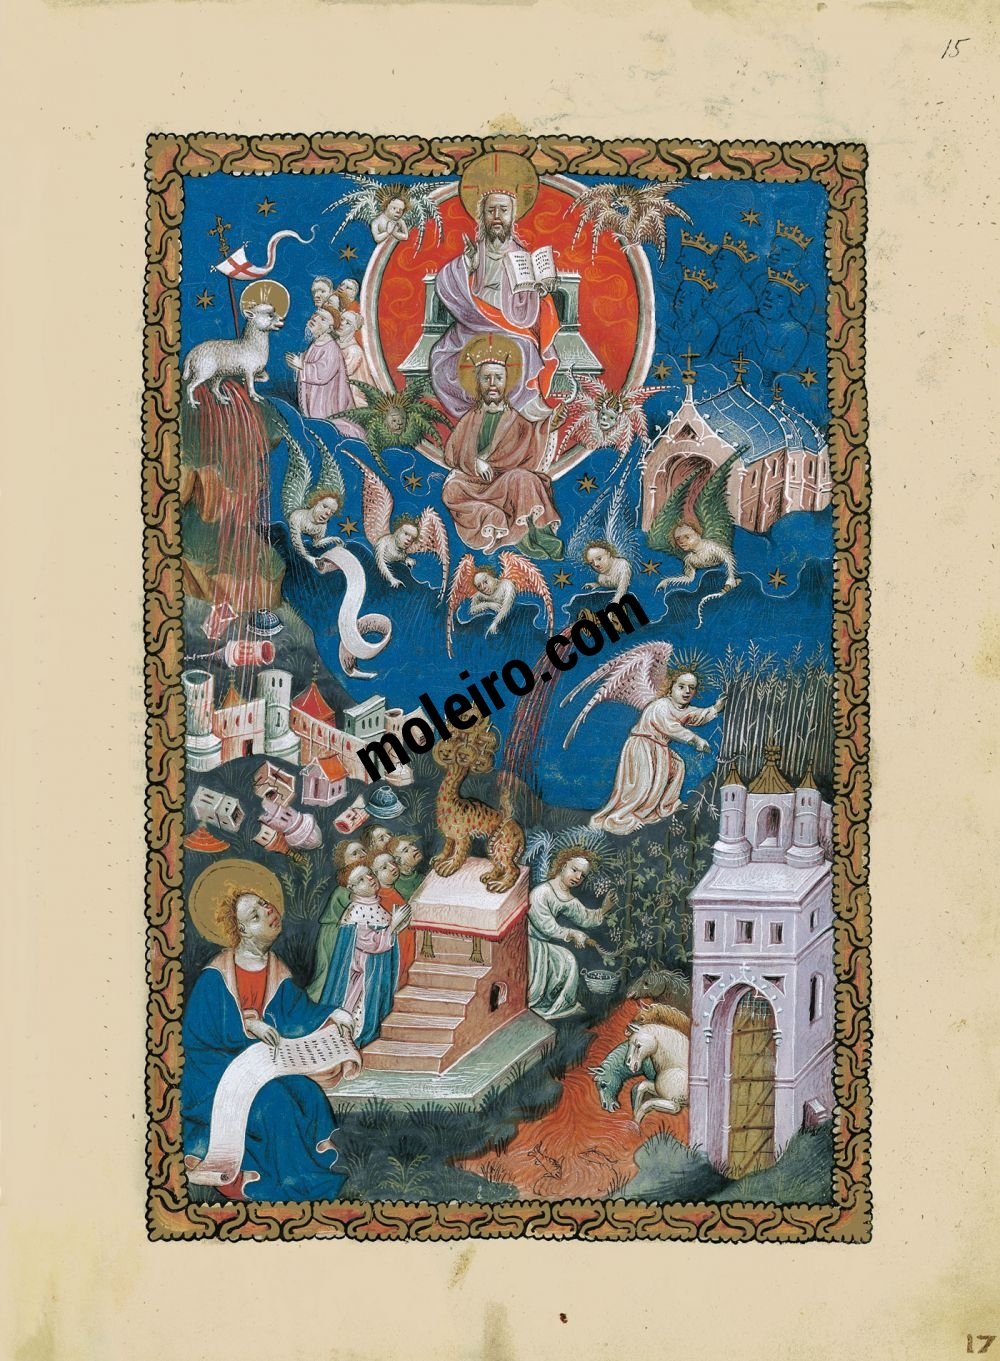 Flämische Apokalypse f. 15r, Die Verehrung des Lammes, der Fall Babylons, die Mahd und die Weinlese